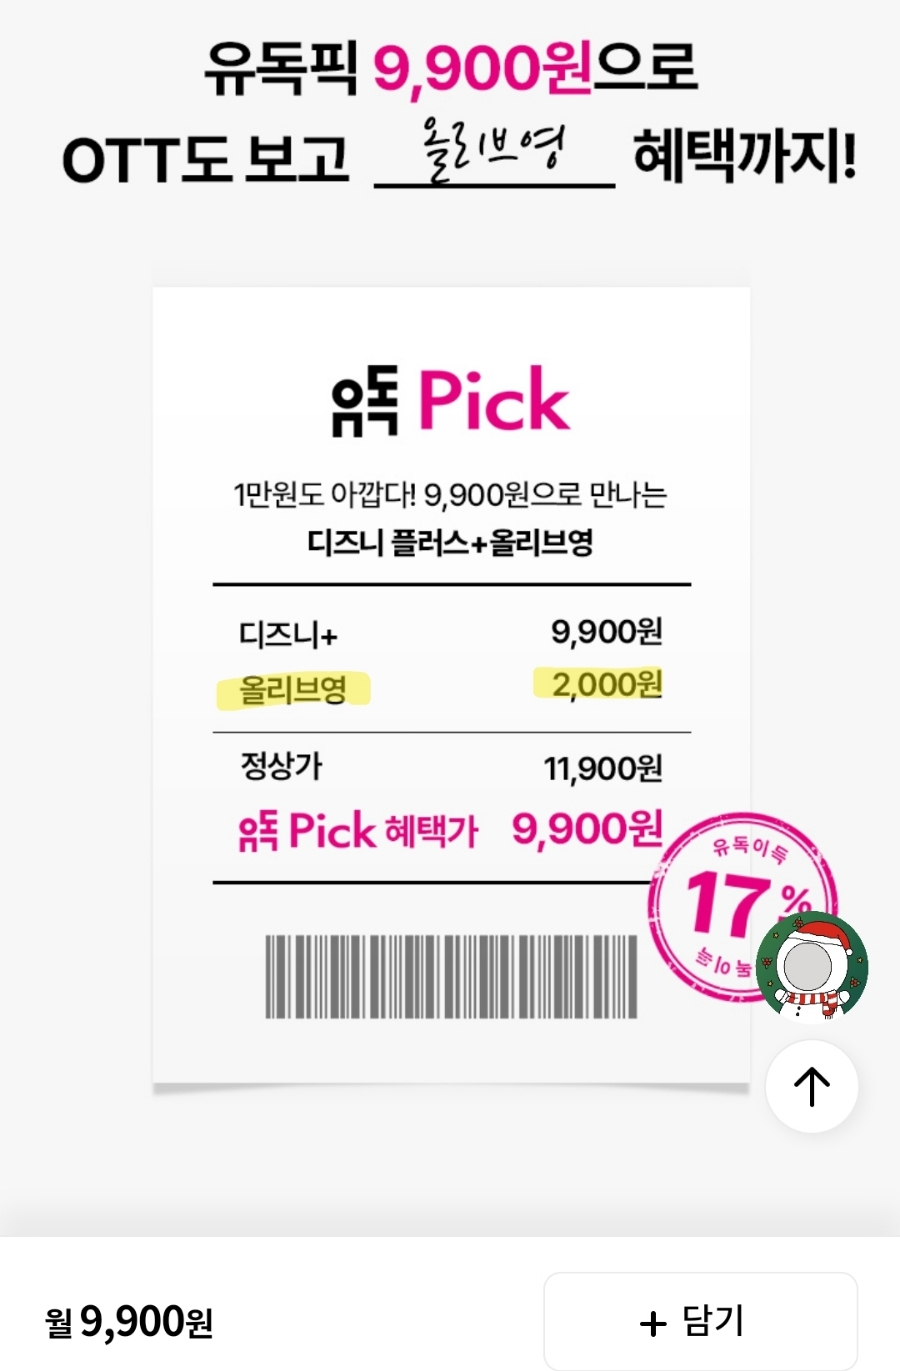 디즈니플러스 가격 할인 방법? 통신사 상관없이 LG 유플러스 유독으로 구독..!(feat. 올리브영, 파리바게뜨, 배스킨라빈스)